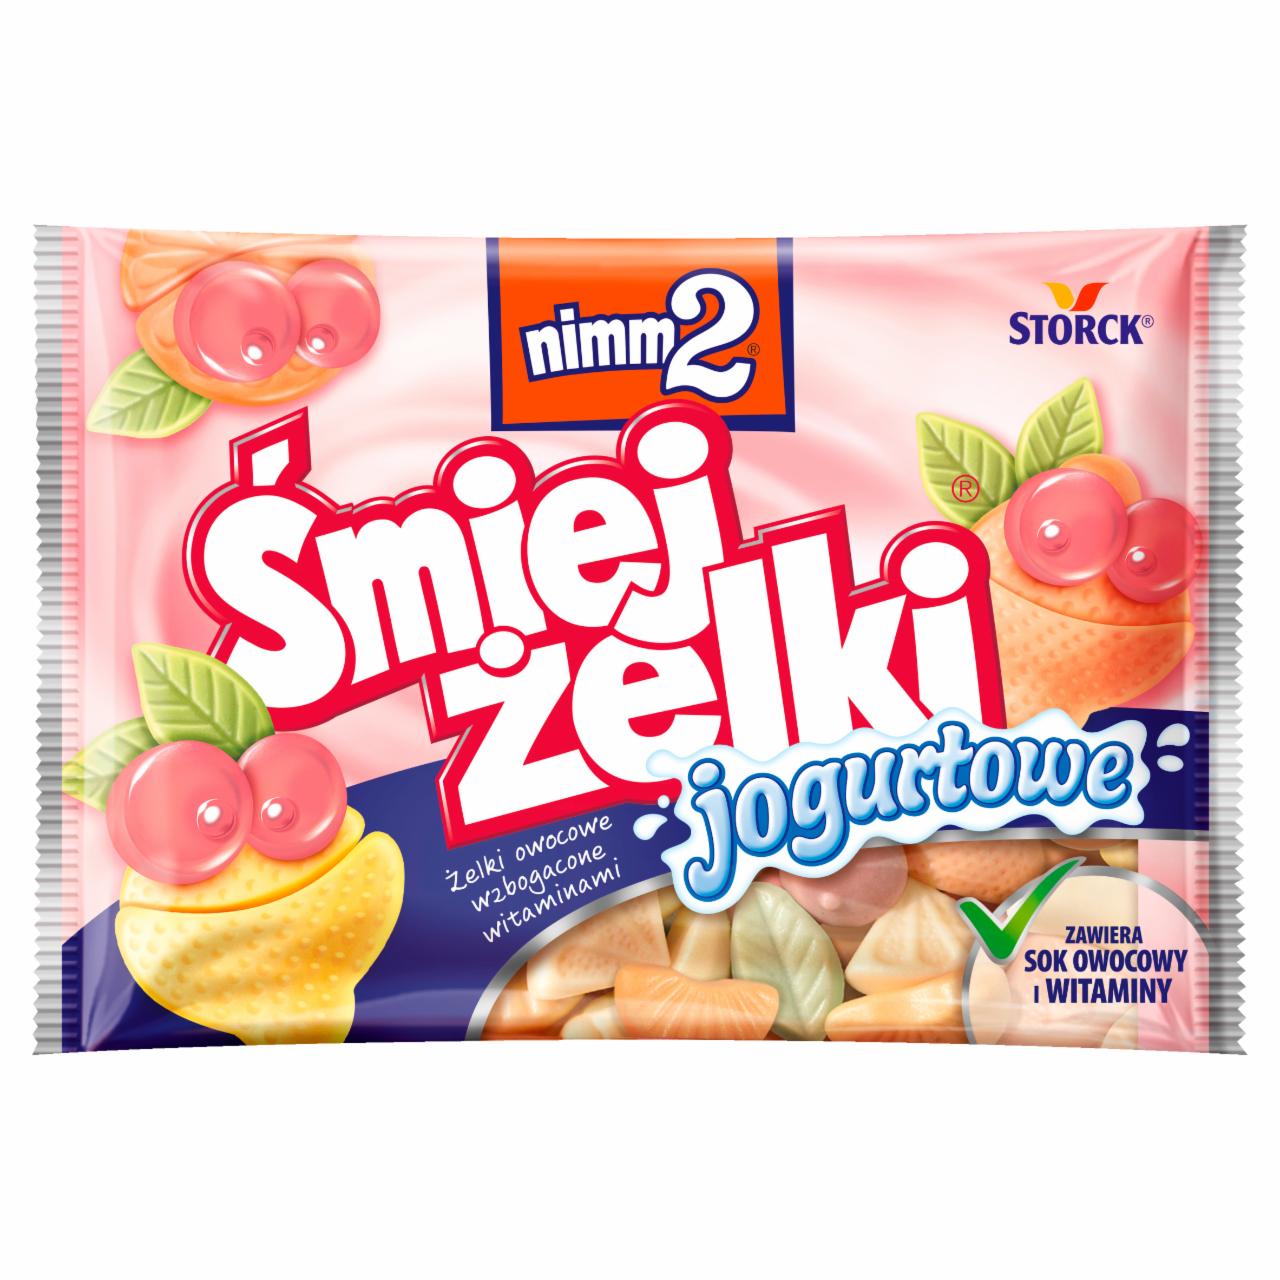 Photo - nimm2 Śmiejżelki Yoghurt Fruit Jellies with Vitamins 100 g